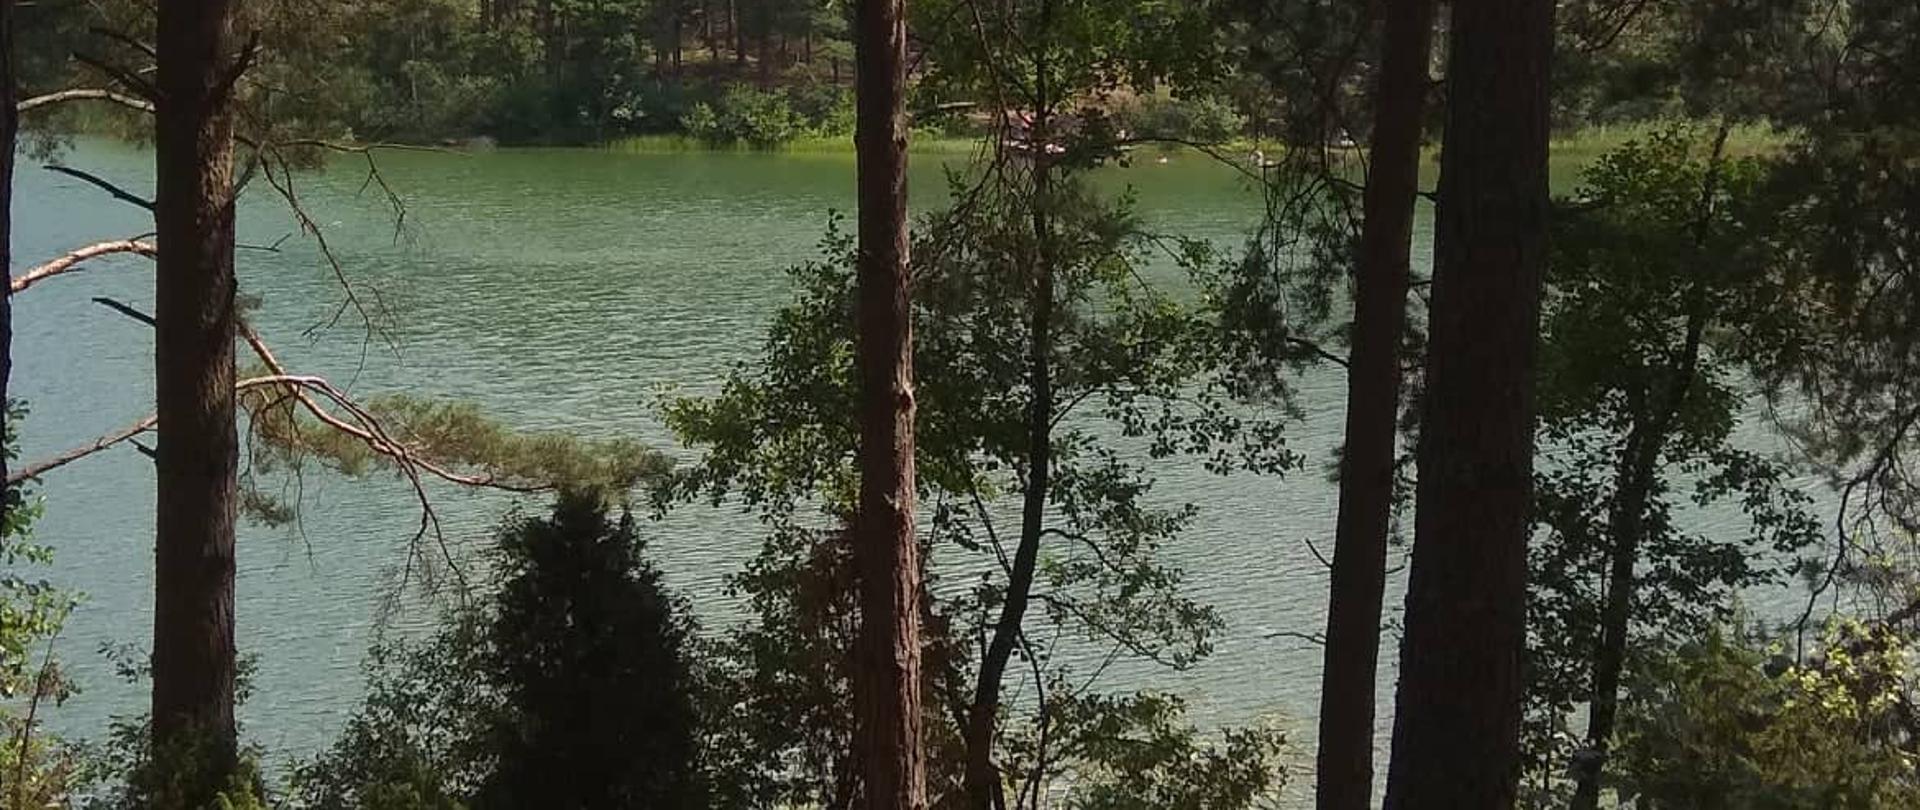 widok na jezioro pomiędzy drzewami w lesie